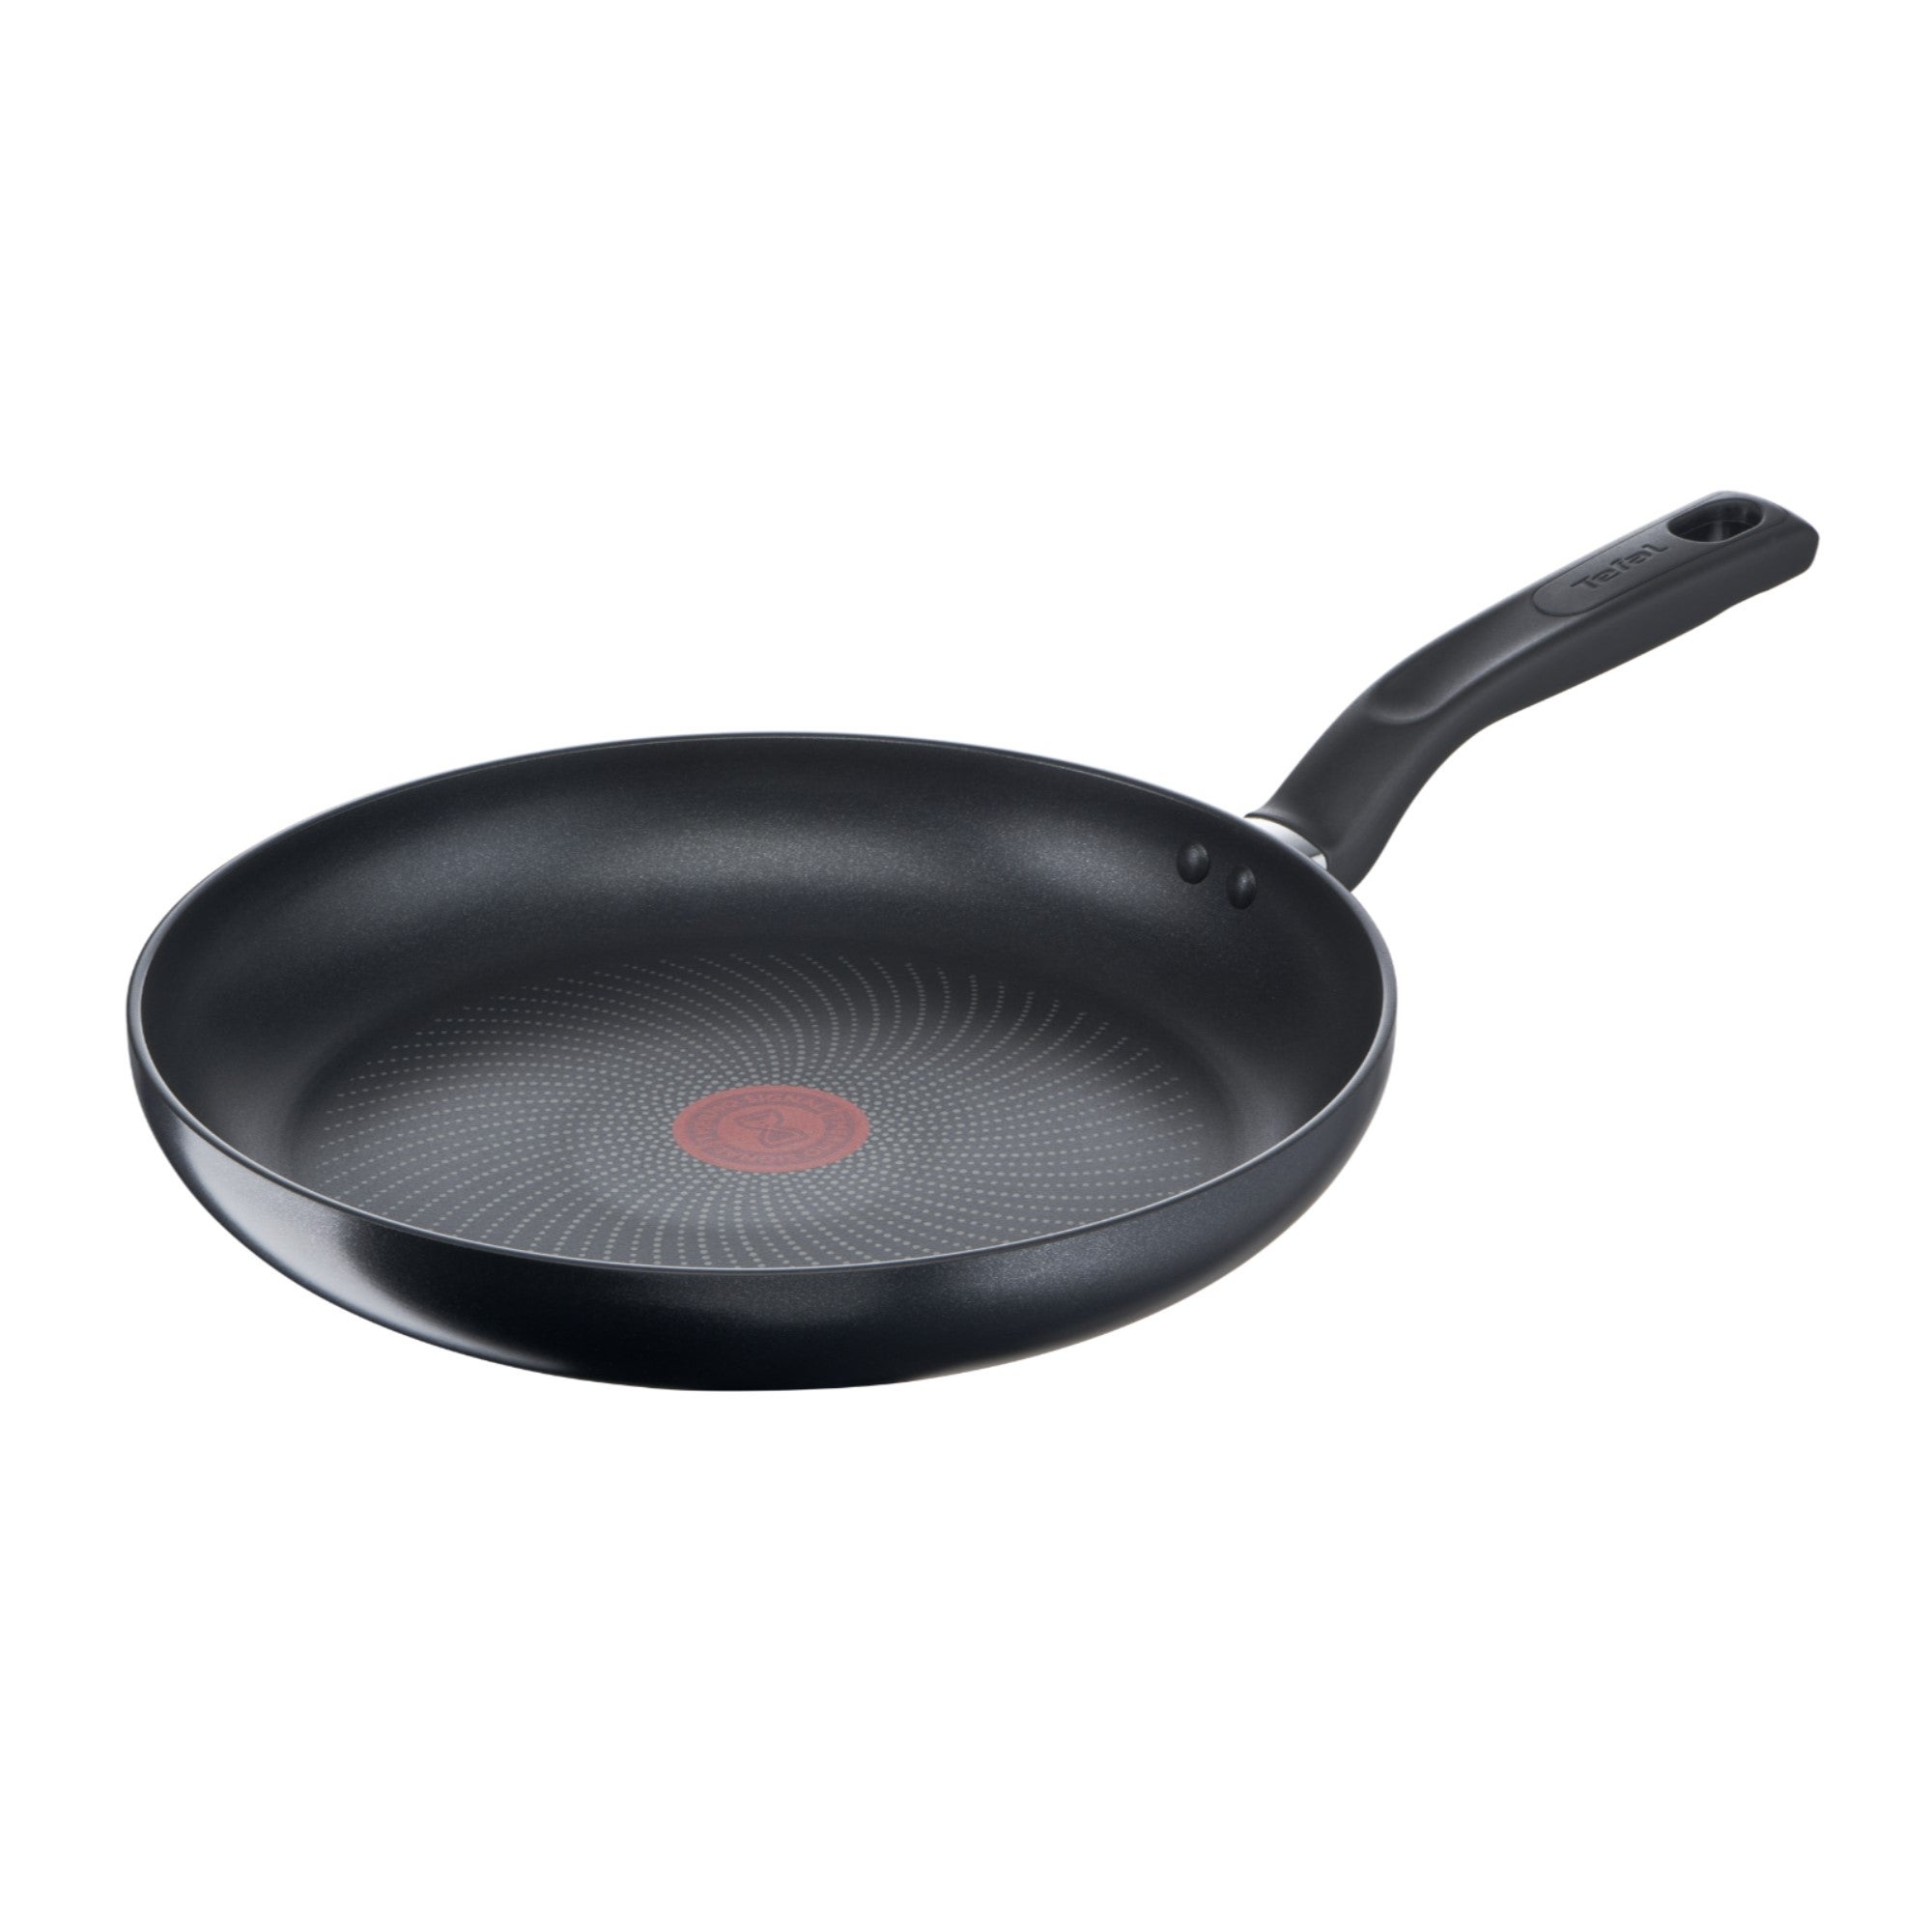 Tefal Total Non-Stick Frying Pan, 32cm